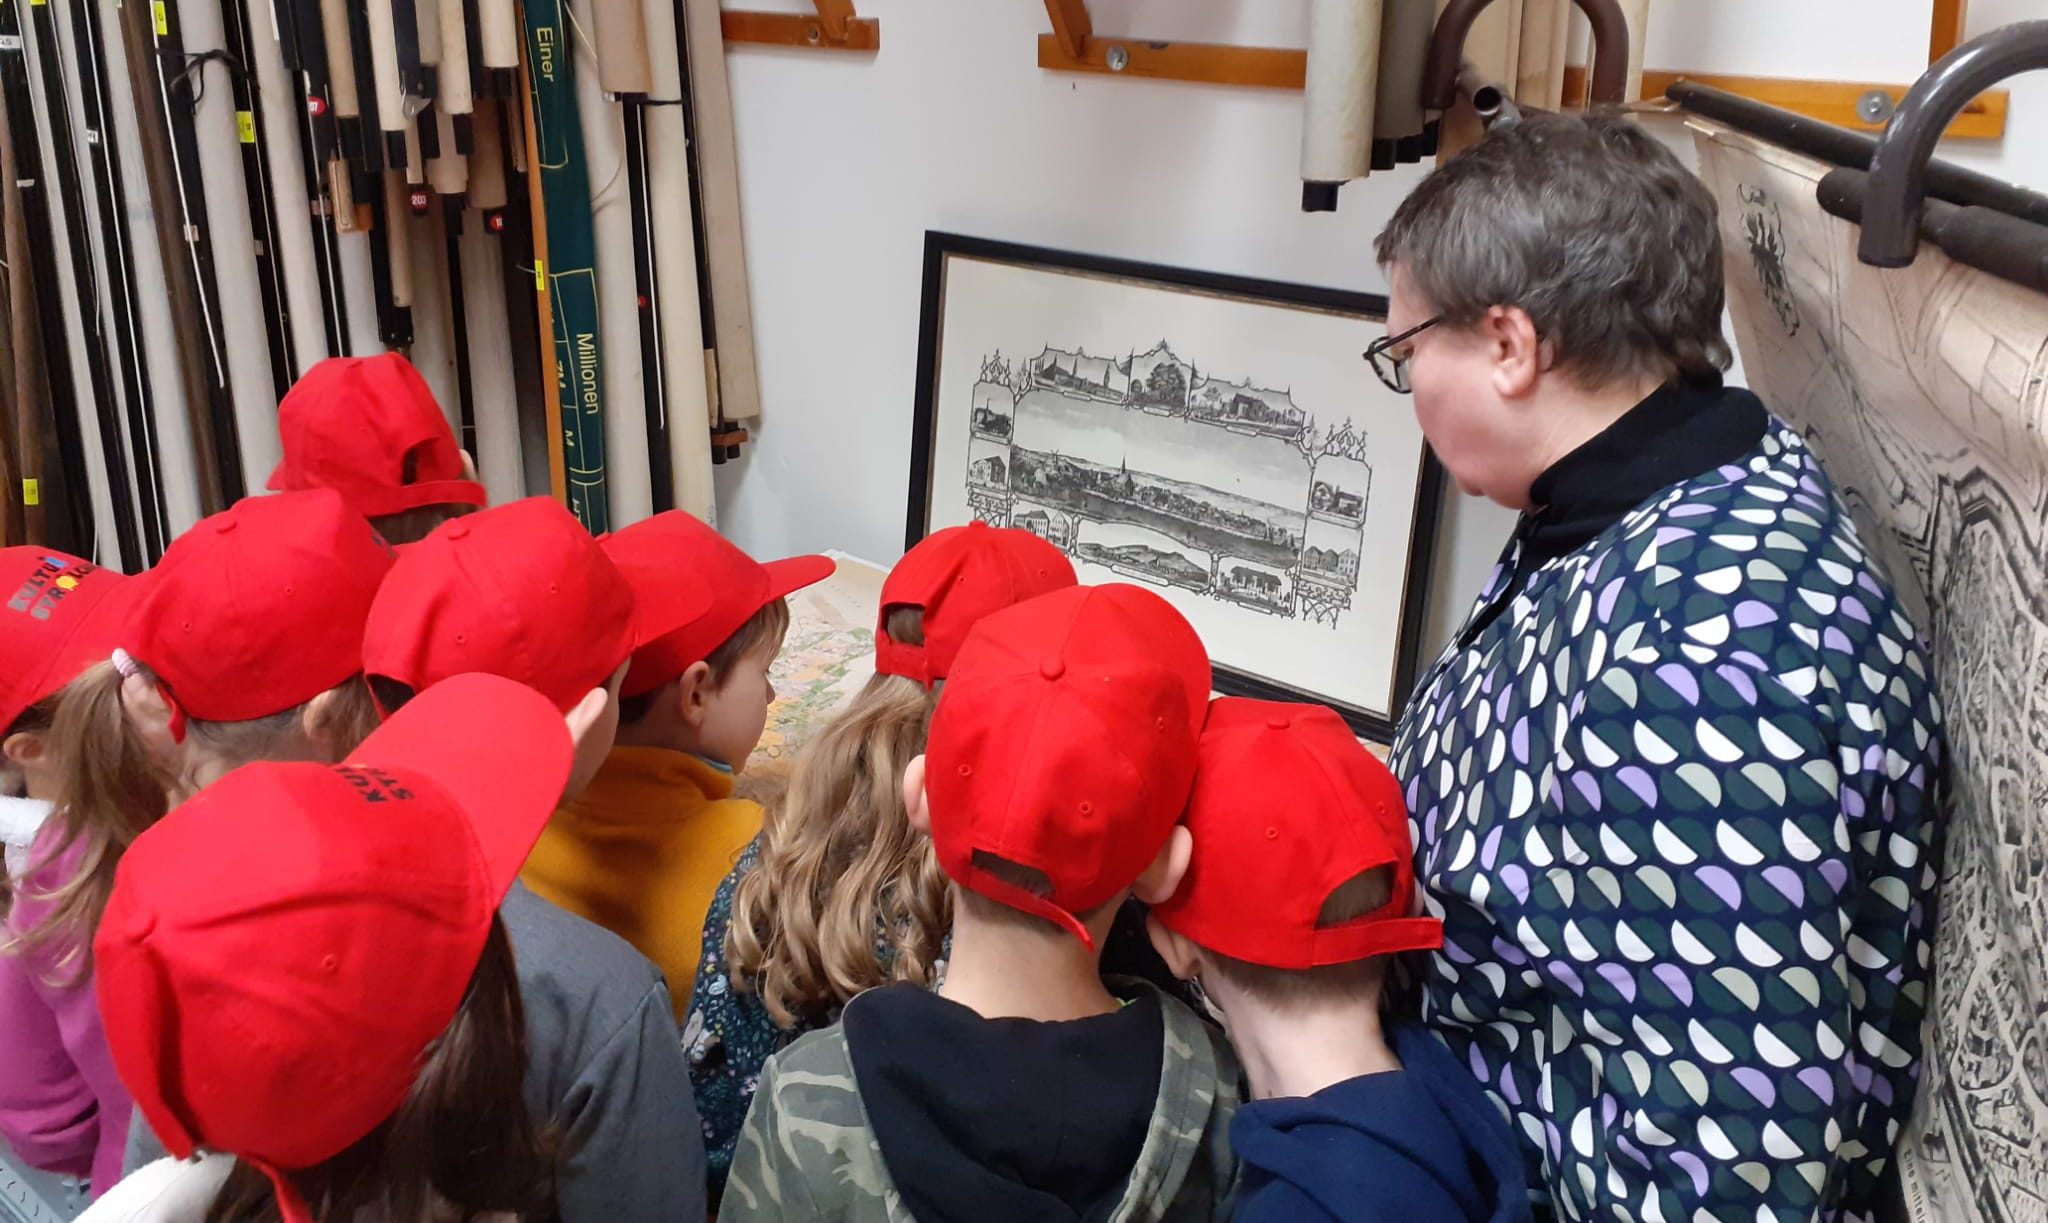 Kinder mit roten Kappen betrachten ein Bild.